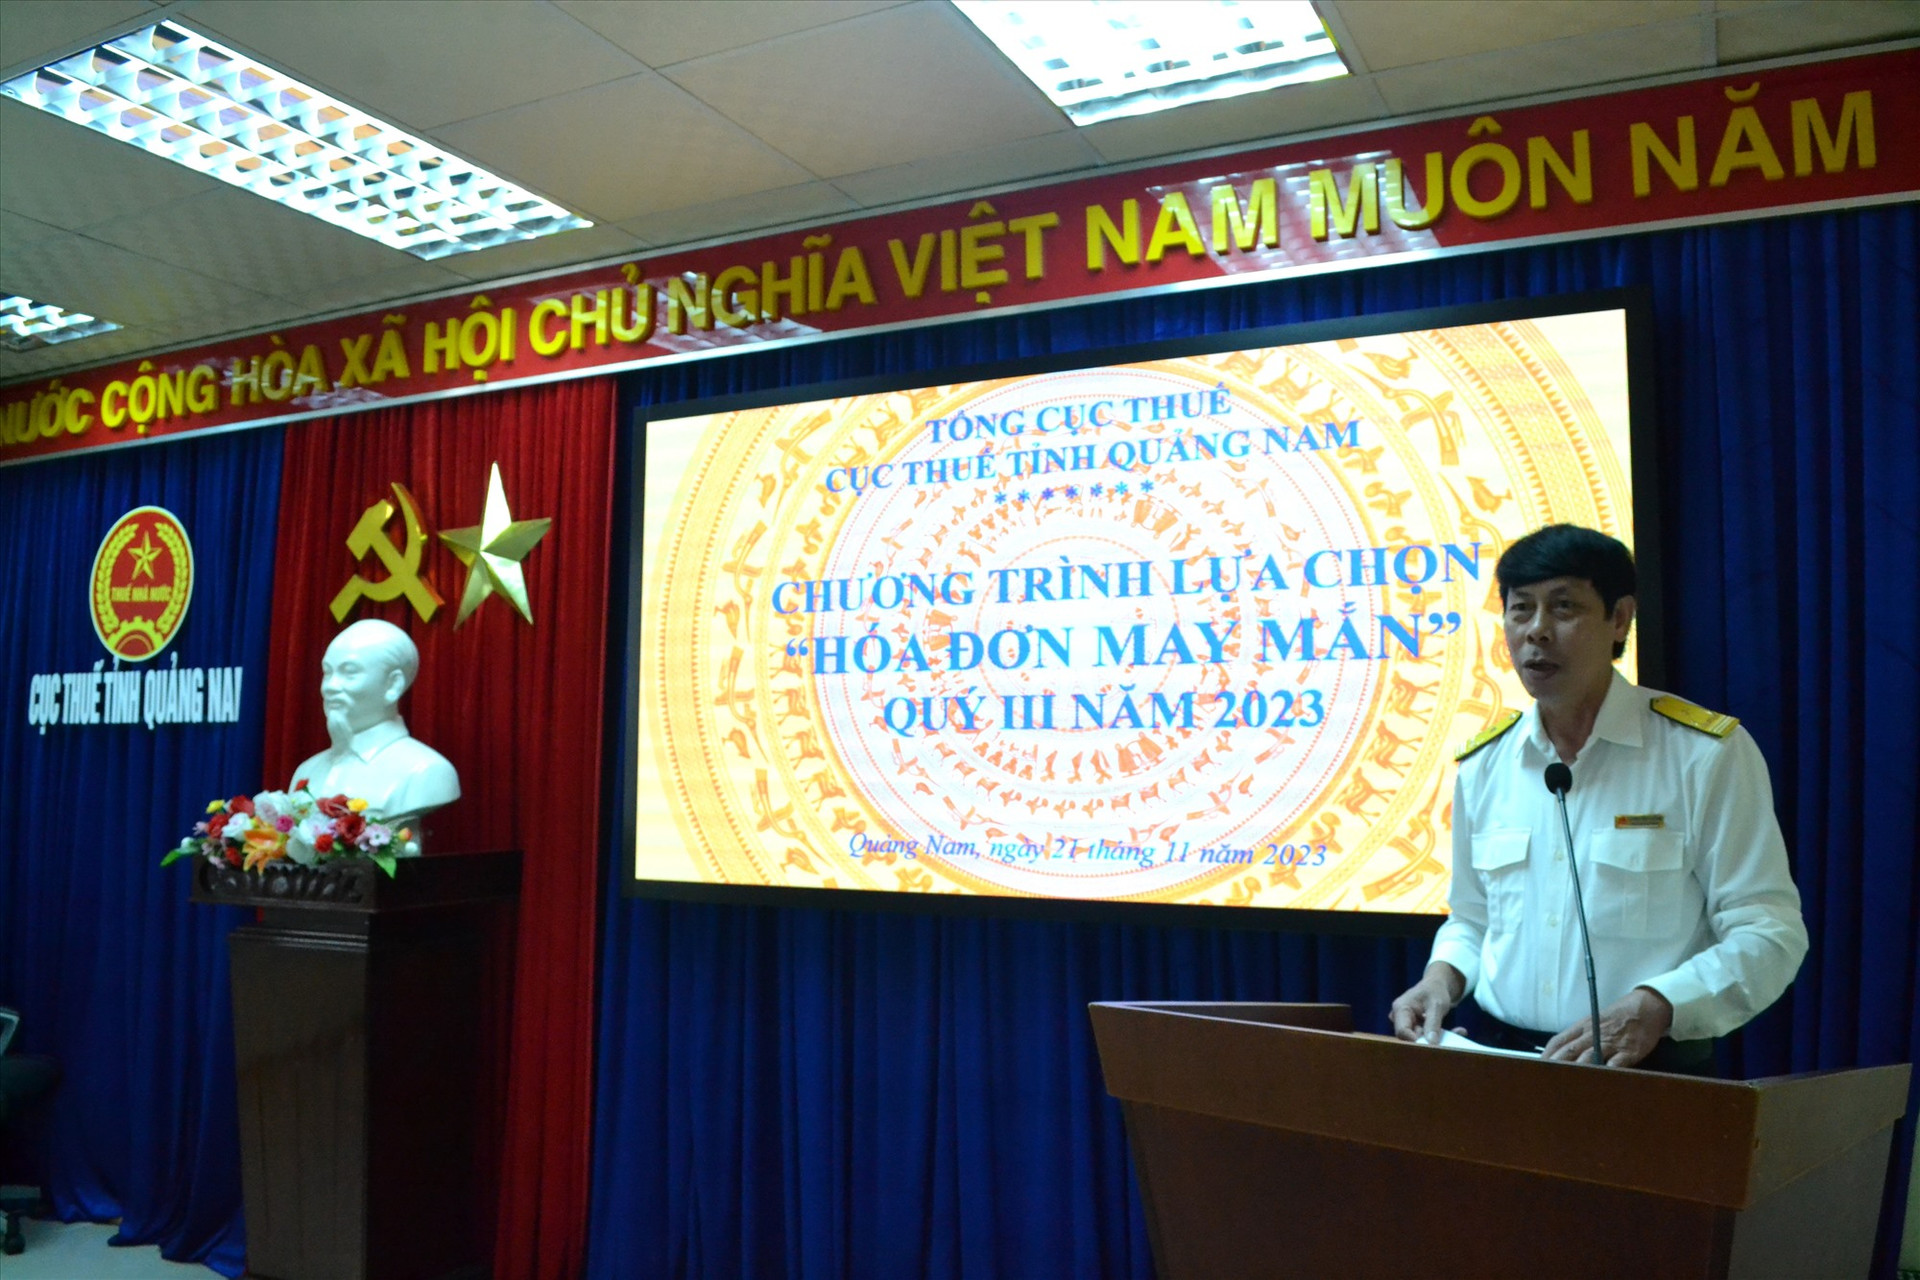 Ông Lương Đình Đường - Phó Cục trưởng Cục Thuế Quảng Nam phát biểu tại chương trình quay thưởng “Hóa đơn may mắn” quý III/2023. Ảnh: Q.VIỆT